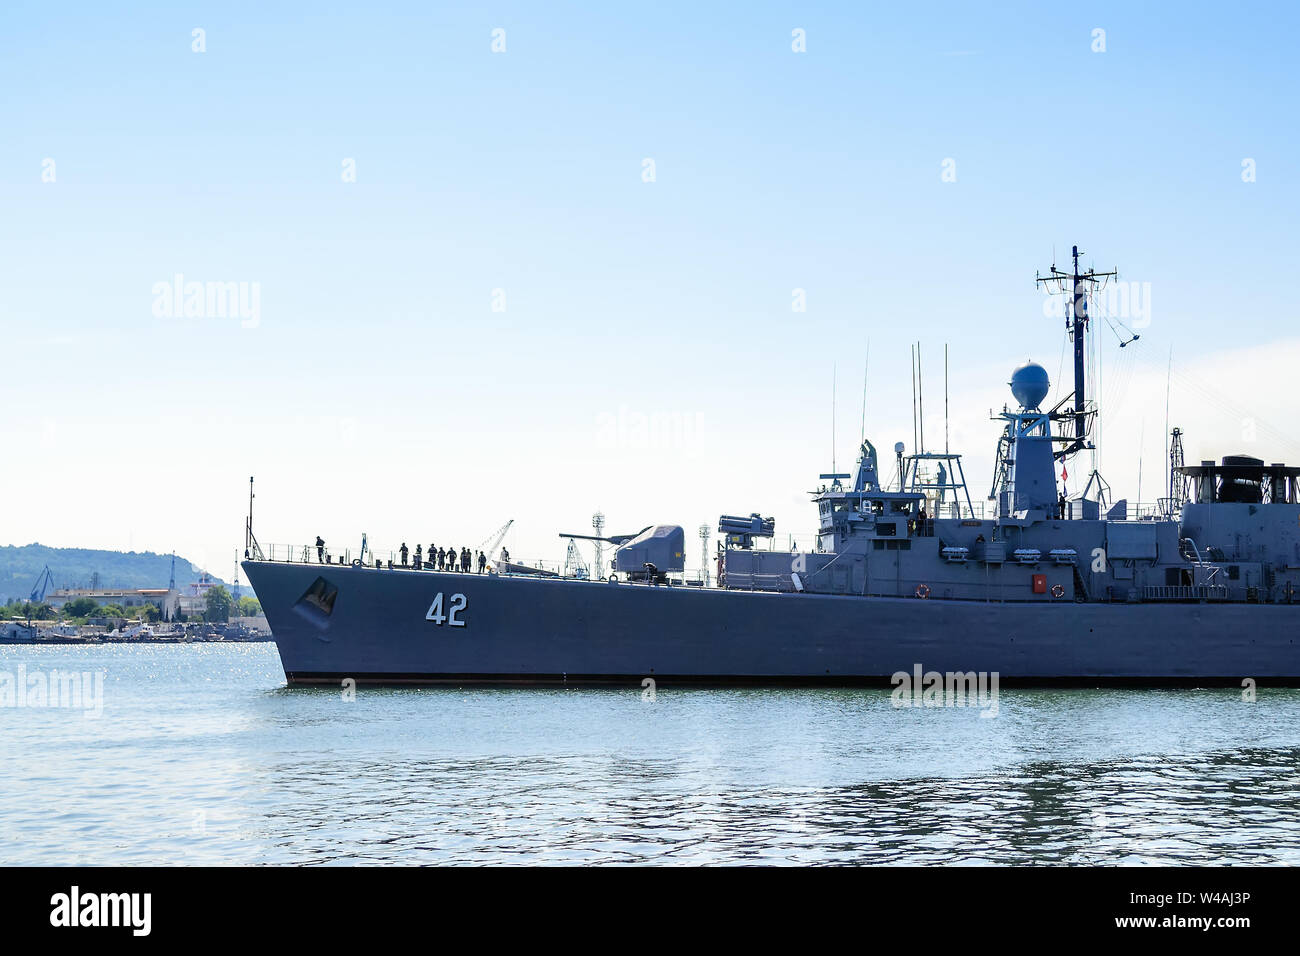 Varna, Bulgarie, le 20 juillet 2019. Grand navire de guerre moderne gris avec des radars et des armes quitte le port d'un jour d'été ensoleillé. Exercices navals. Banque D'Images